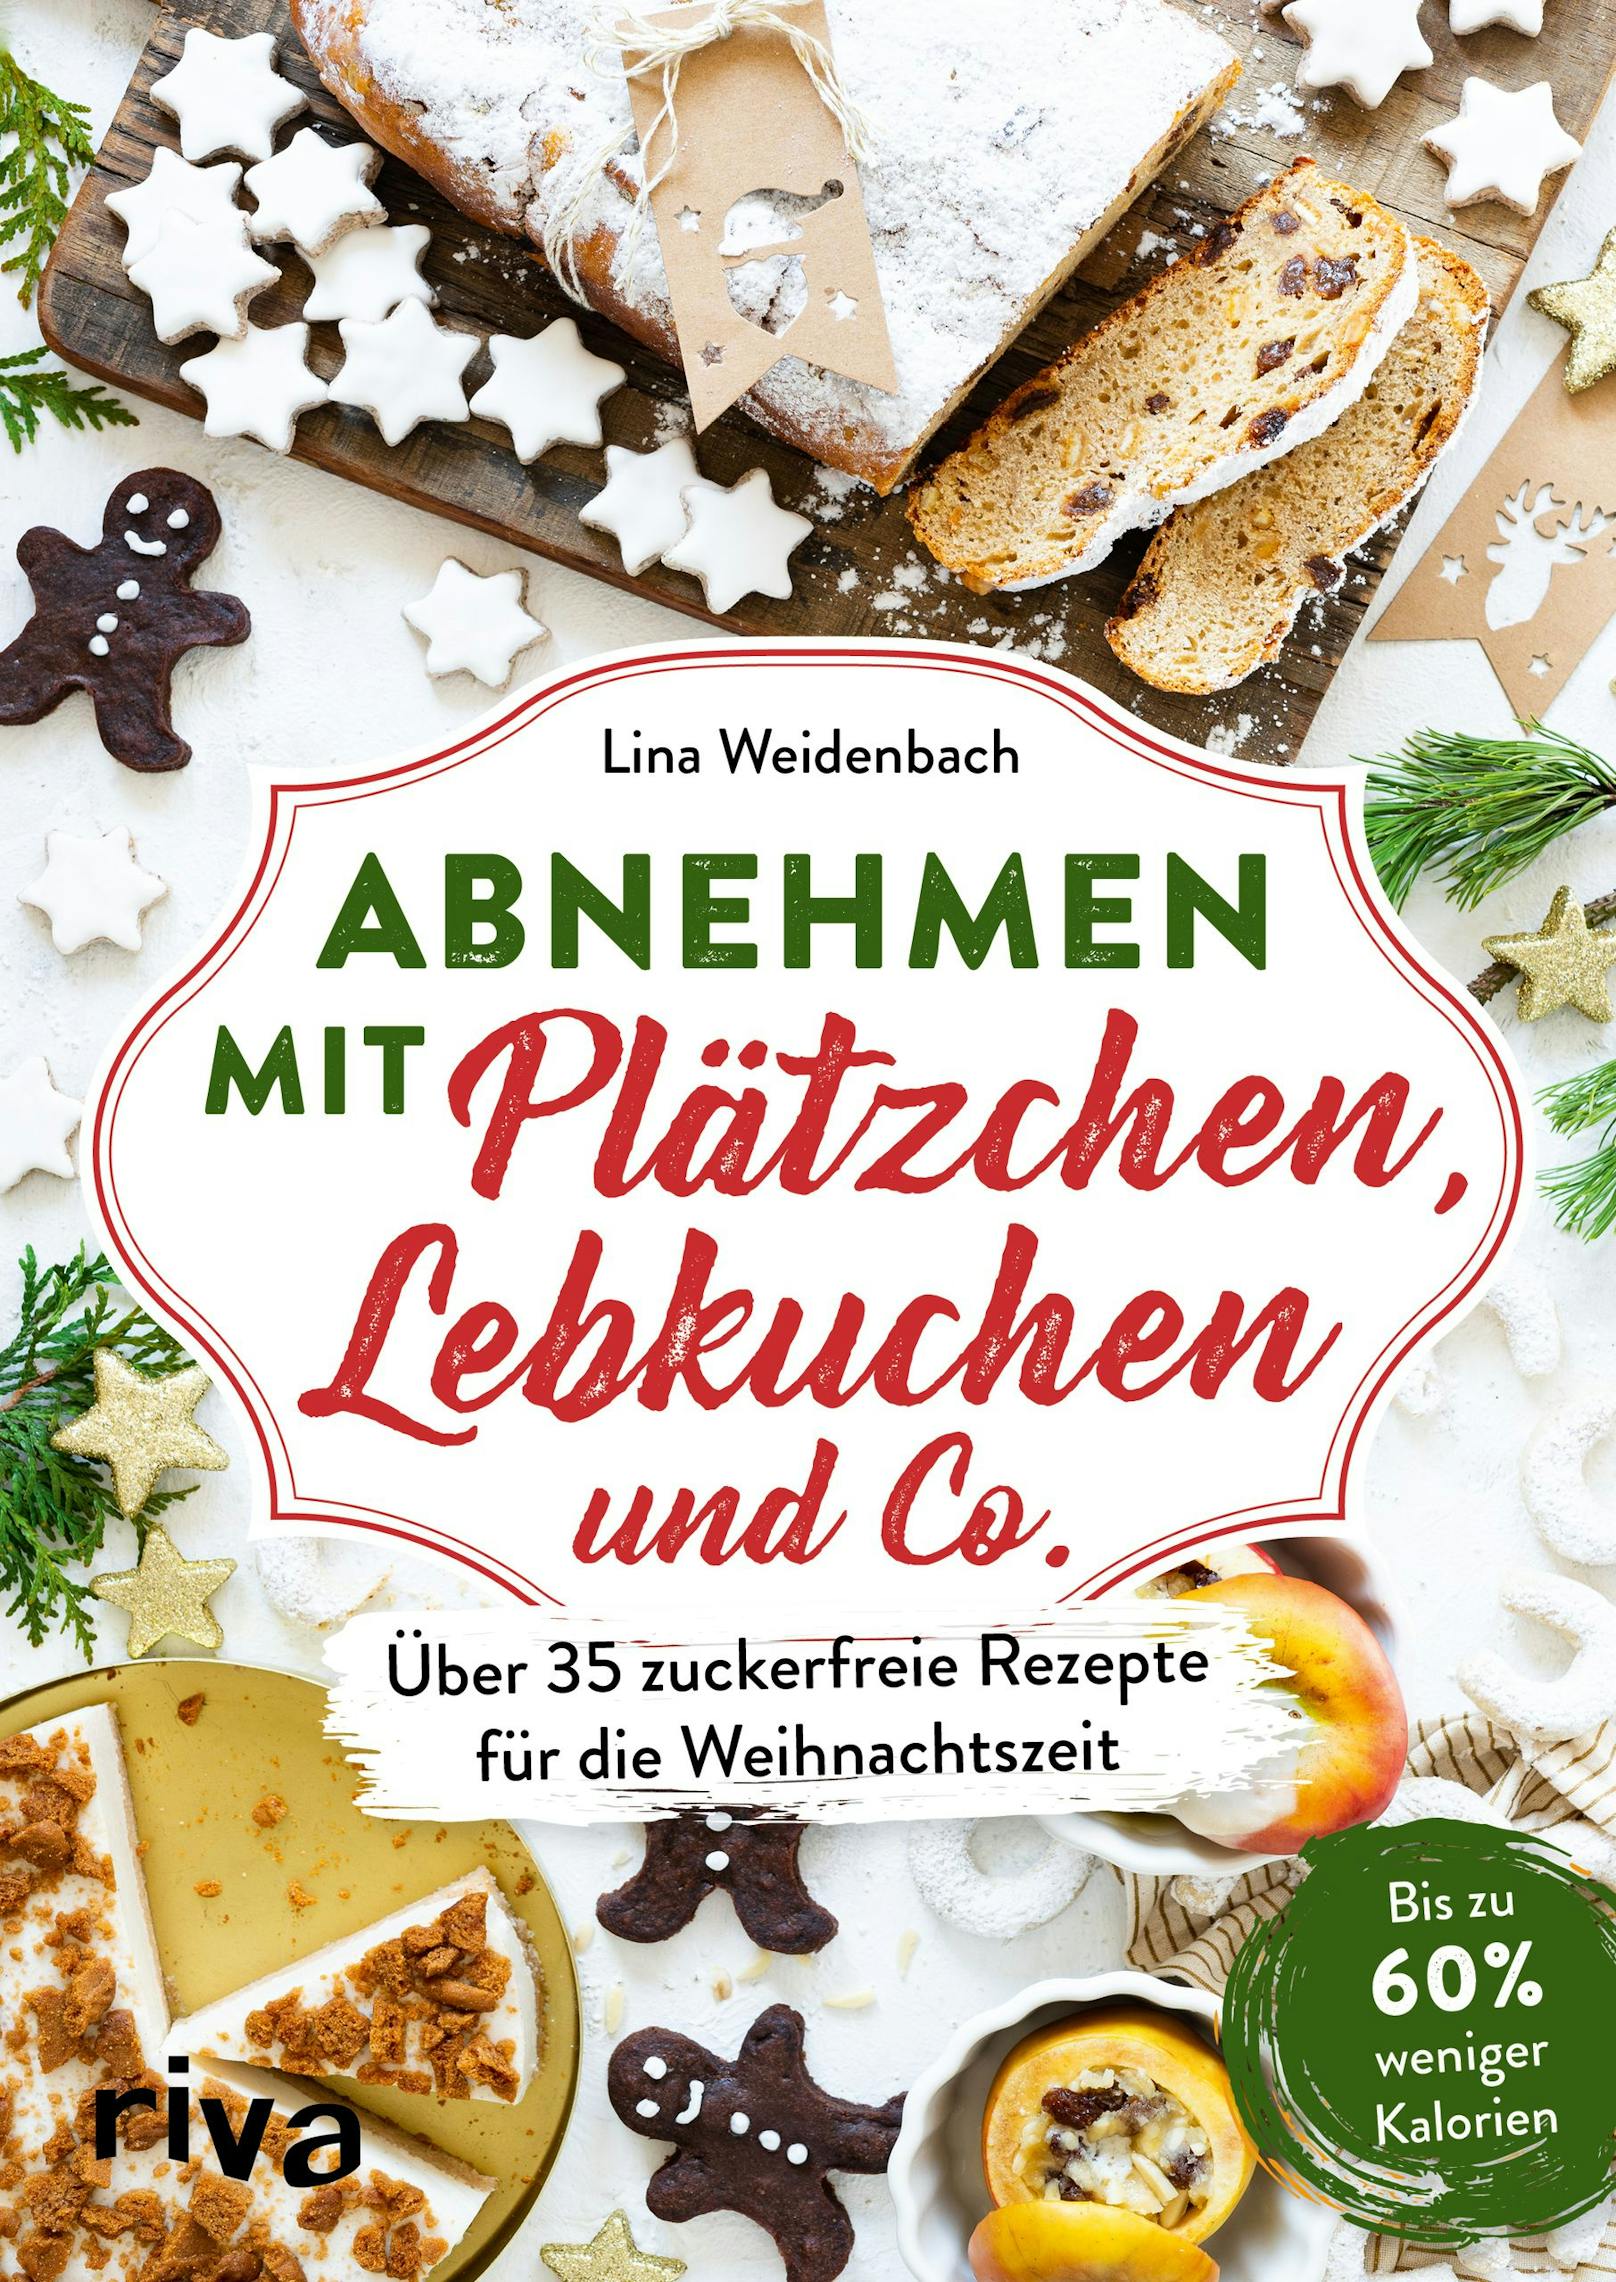 "Abnehmen mit Plätzchen, Lebkuchen und Co" von Lina Weidenbach, <a href="https://www.m-vg.de/riva/shop/article/19815-abnehmen-mit-plaetzchen-lebkuchen-und-co/">Riva-Verlag</a>, 96 Seiten, 13,40 Euro.